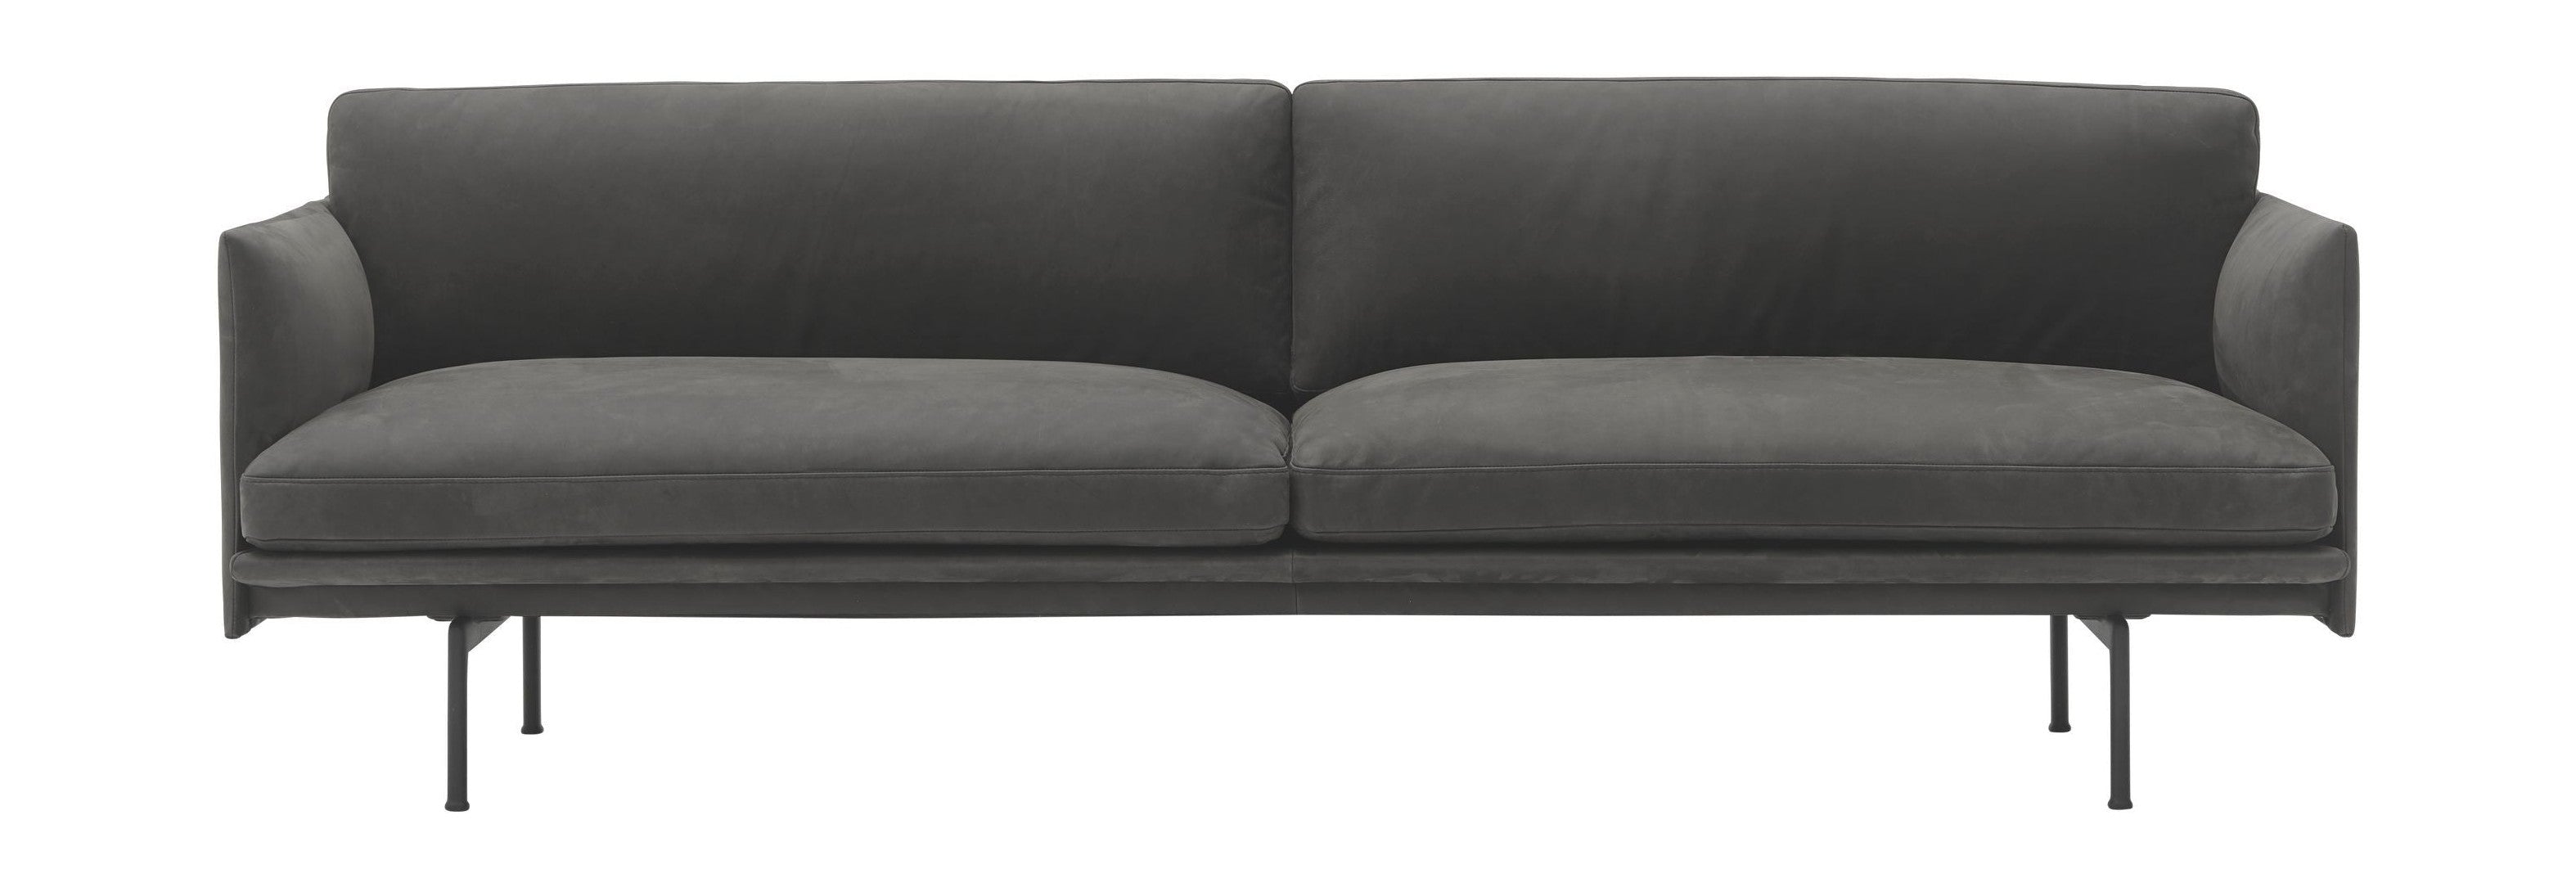 Muuto Ääriviivat sohva 3 -paikkainen armo nahka, harmaa/musta